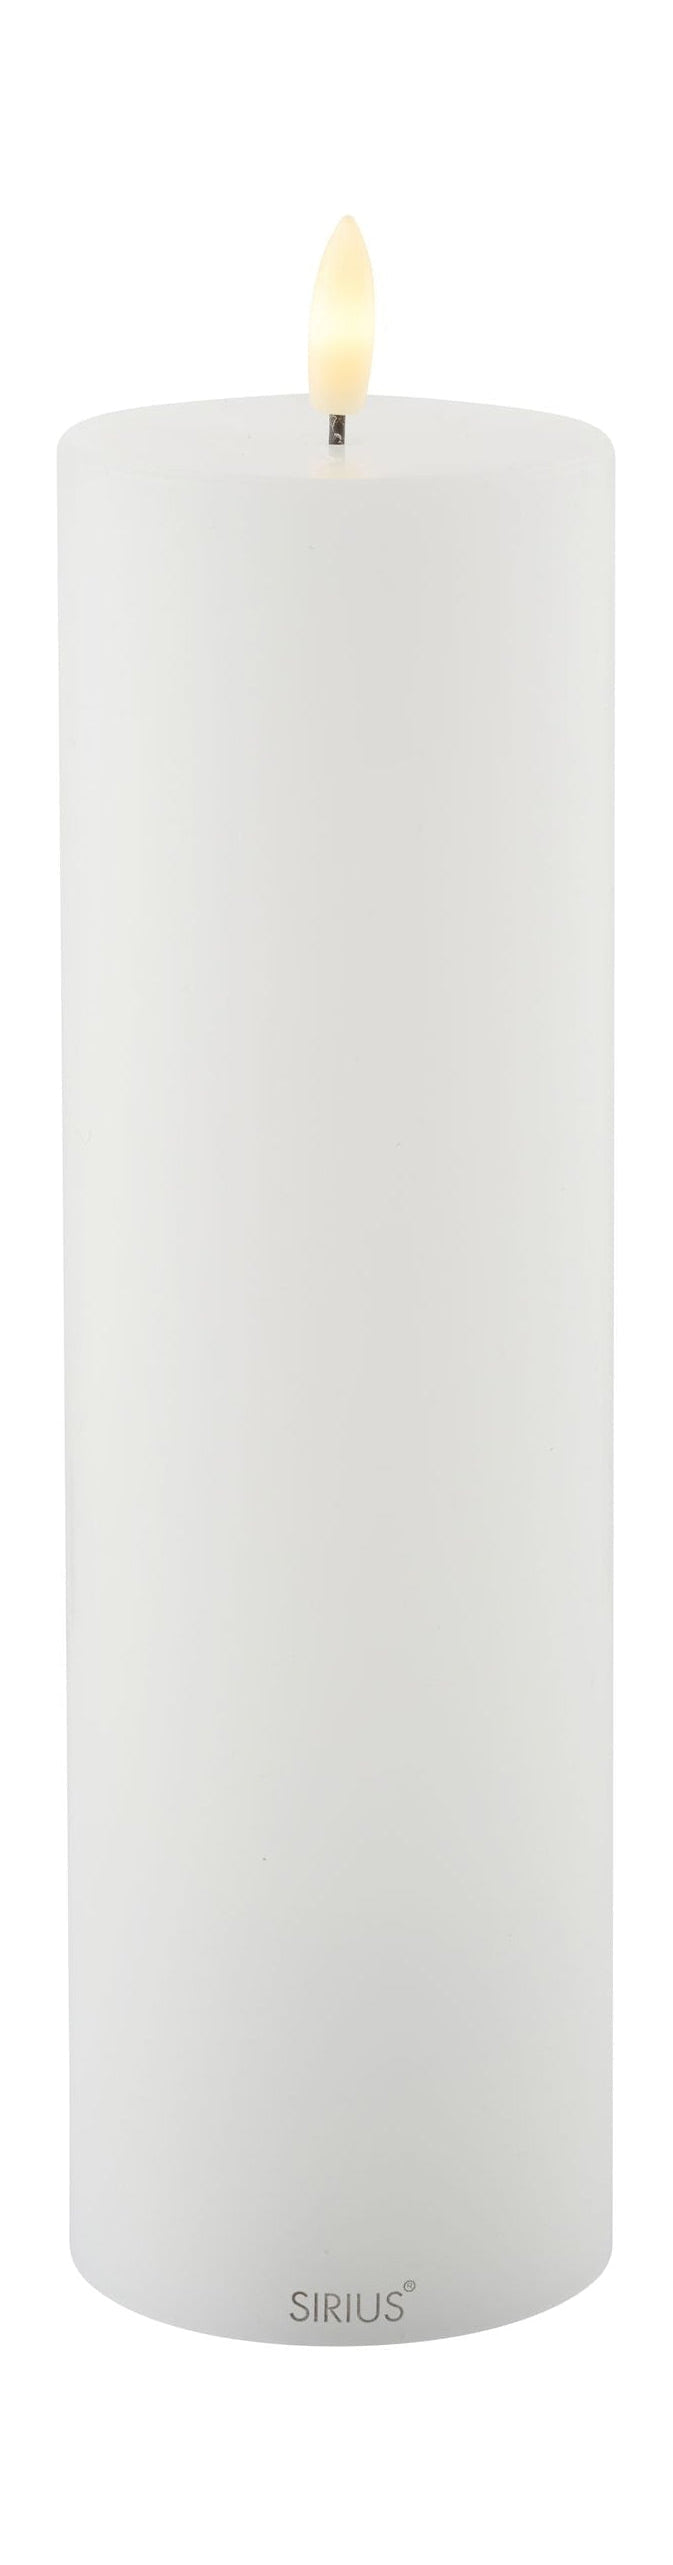 Sirius Sille ladattava LED -kynttilä valkoinen, Ø7,5x H25 cm